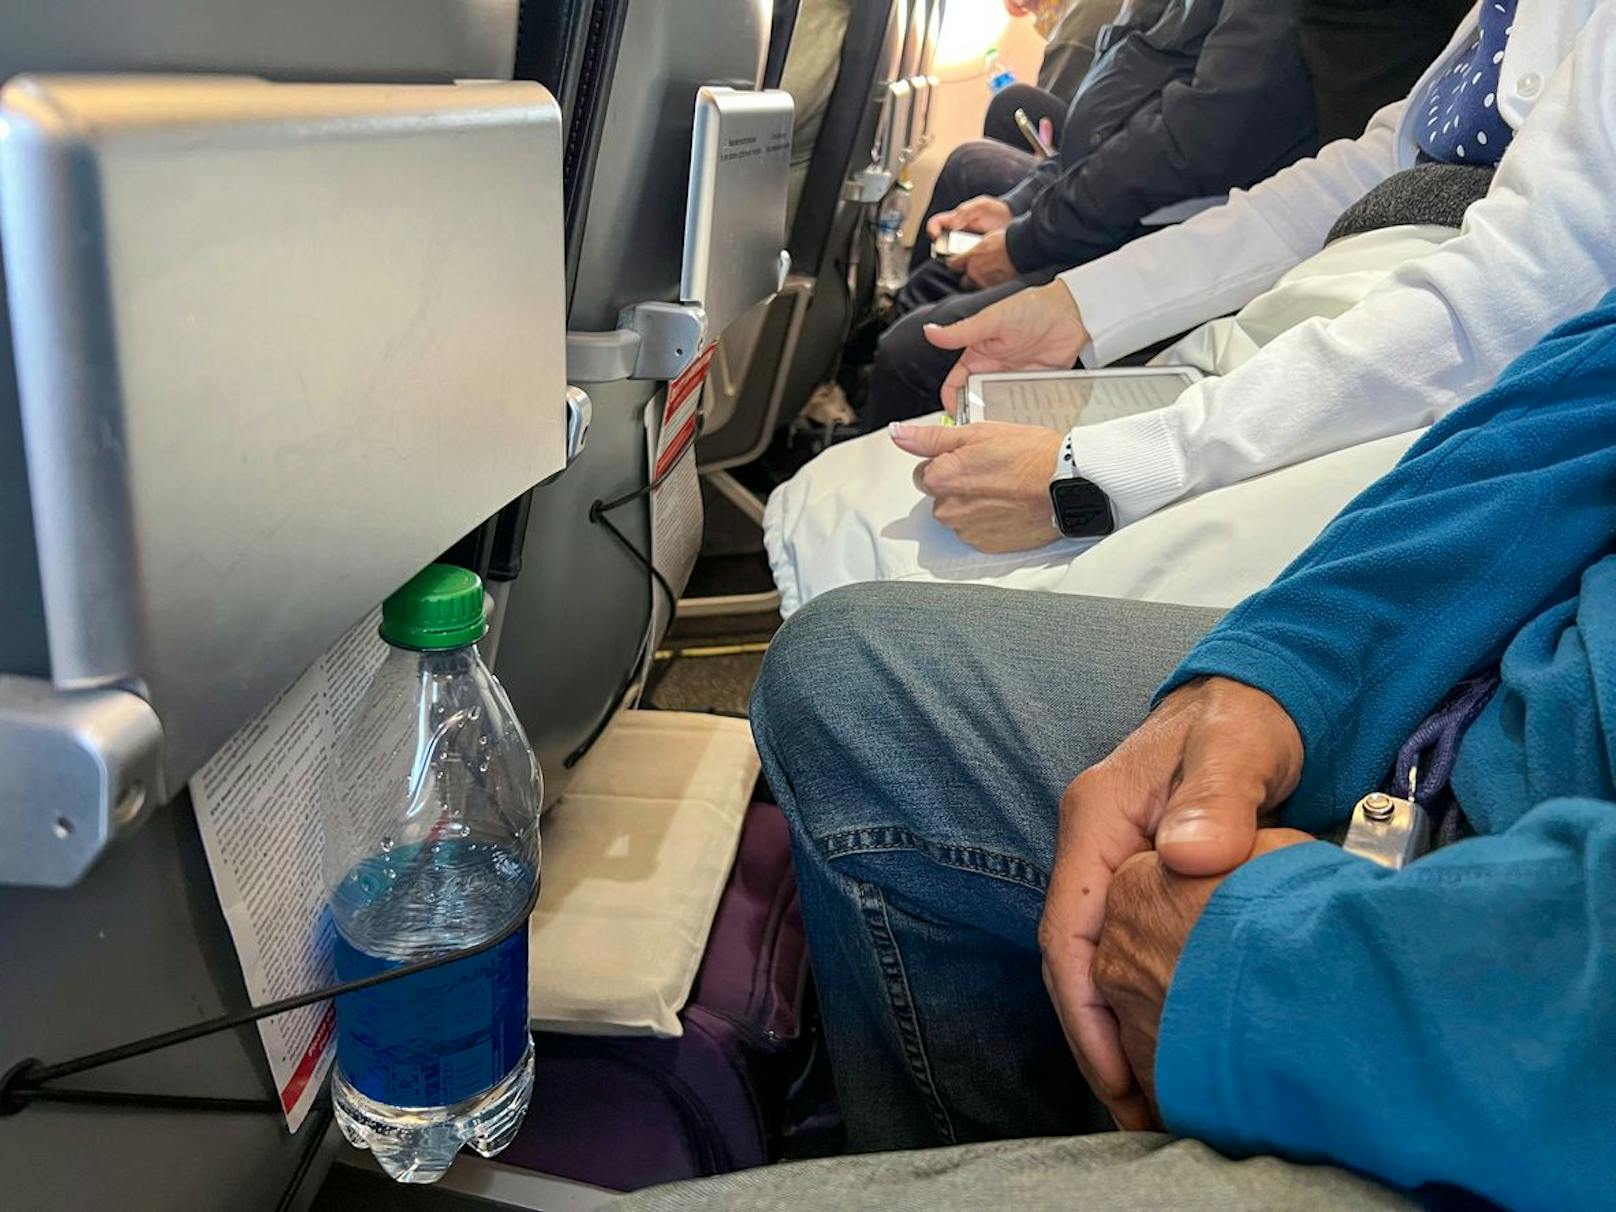 Wer in der Economy-Class reist, sitzt gewöhnlich eng. Besonders für große Menschen ist das unangenehm - vor allem, wenn der Flug lange dauert.